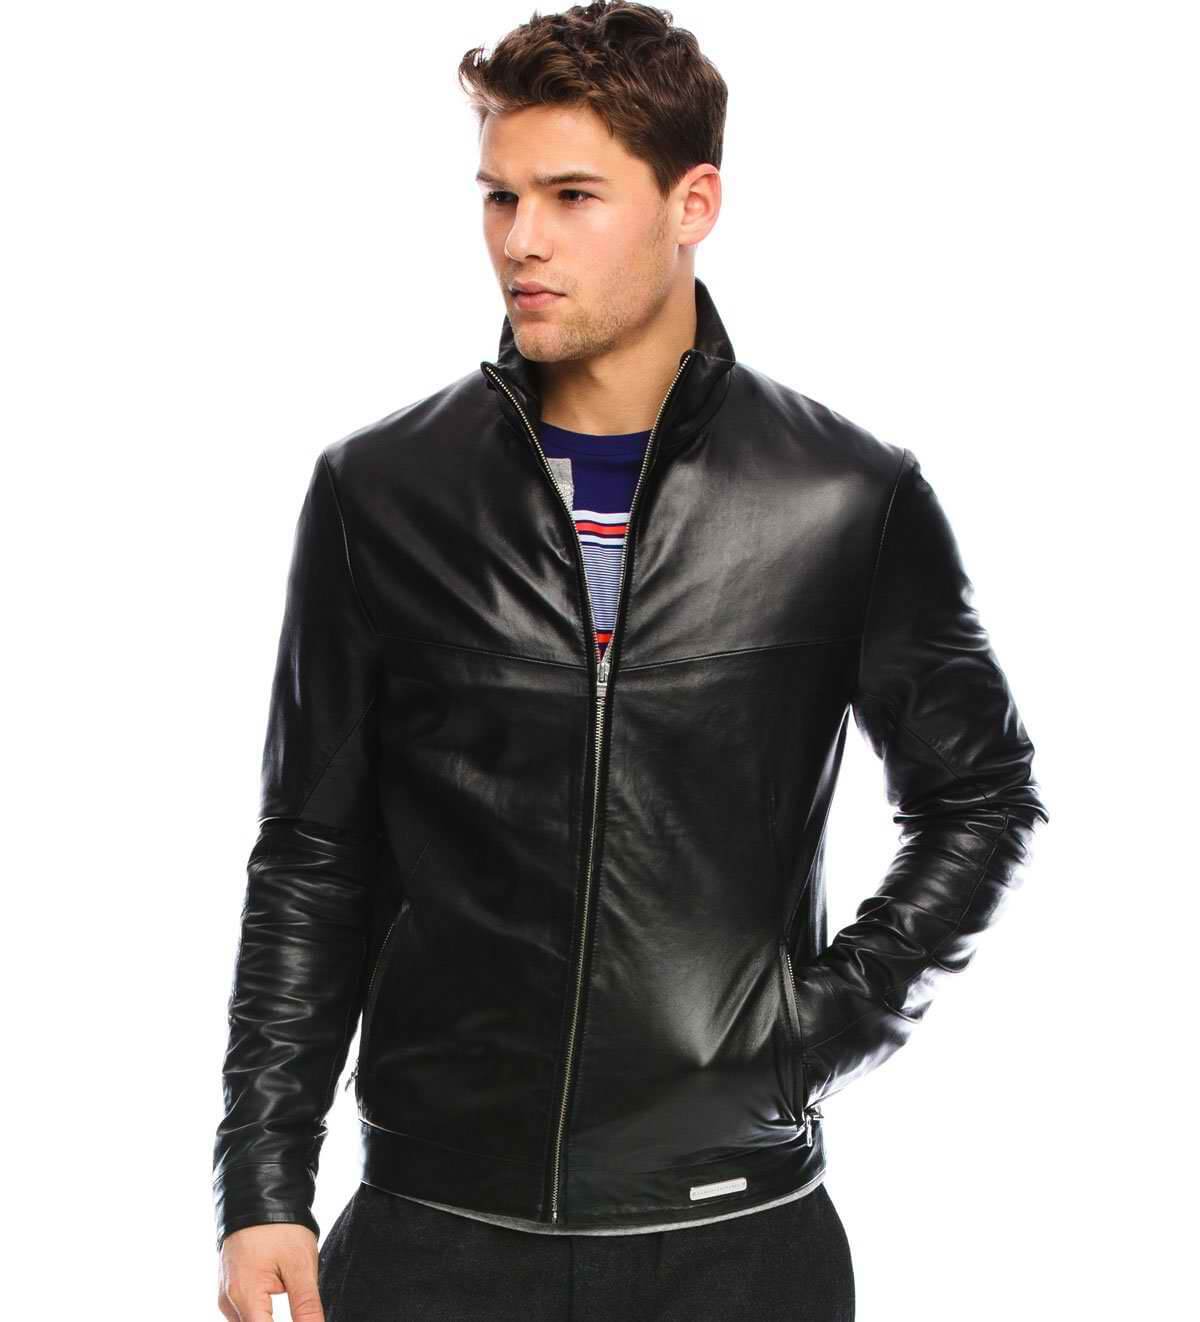 Мужская одежда кожаная куртка. Кожаная куртка Leather Air Jacket 38118. Franko Armondi кожаная куртка мужская. Парень в кожаной куртке. Мужчина в кожаной куртке.